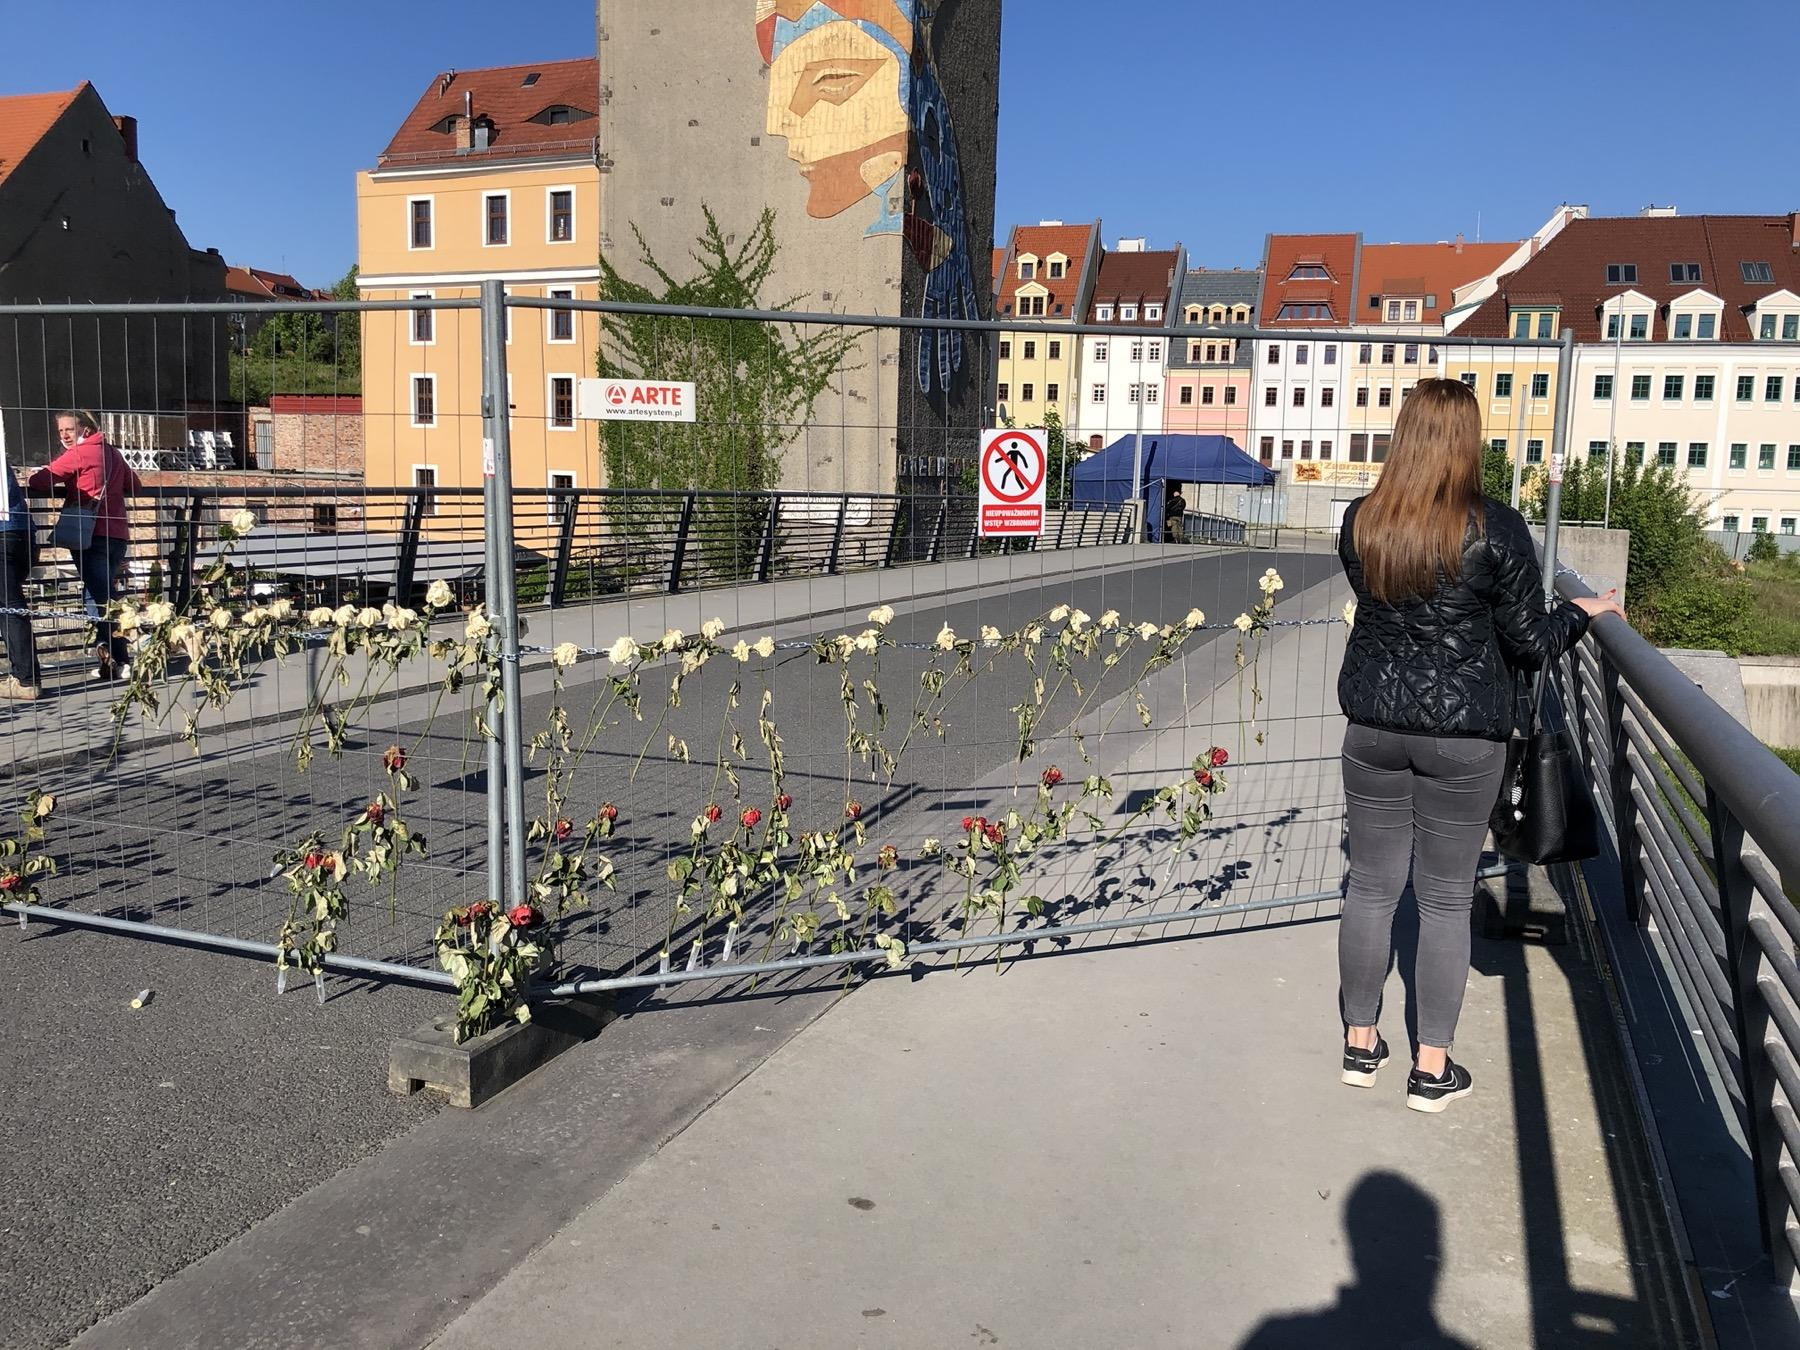 Город Гёрлиц, разделённый напополам границей с Польшей. На время пандемии его реально перегородили стеной, чтобы не ходили туда-сюда. Немцы туда приносили цветочки, а поляки продавали им через забор сигареты.